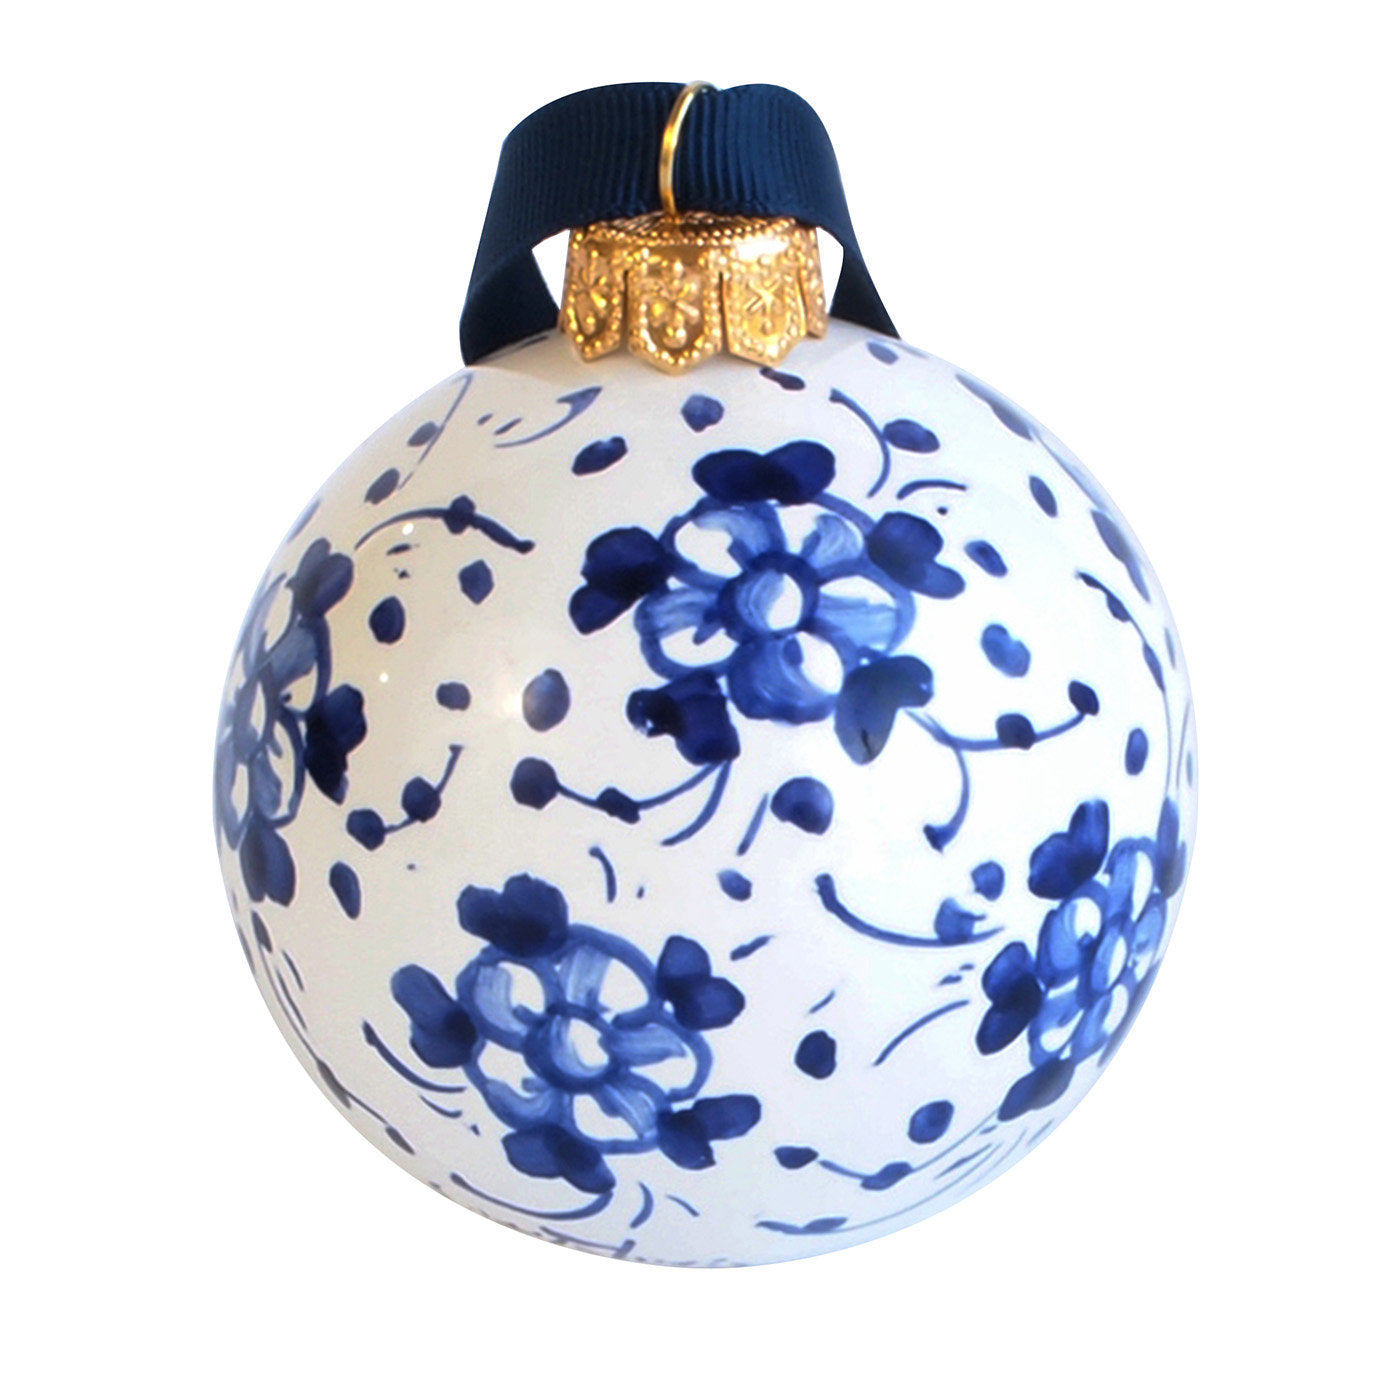 Blaue florale Weihnachtskugel Ornament #1 - Hauptansicht